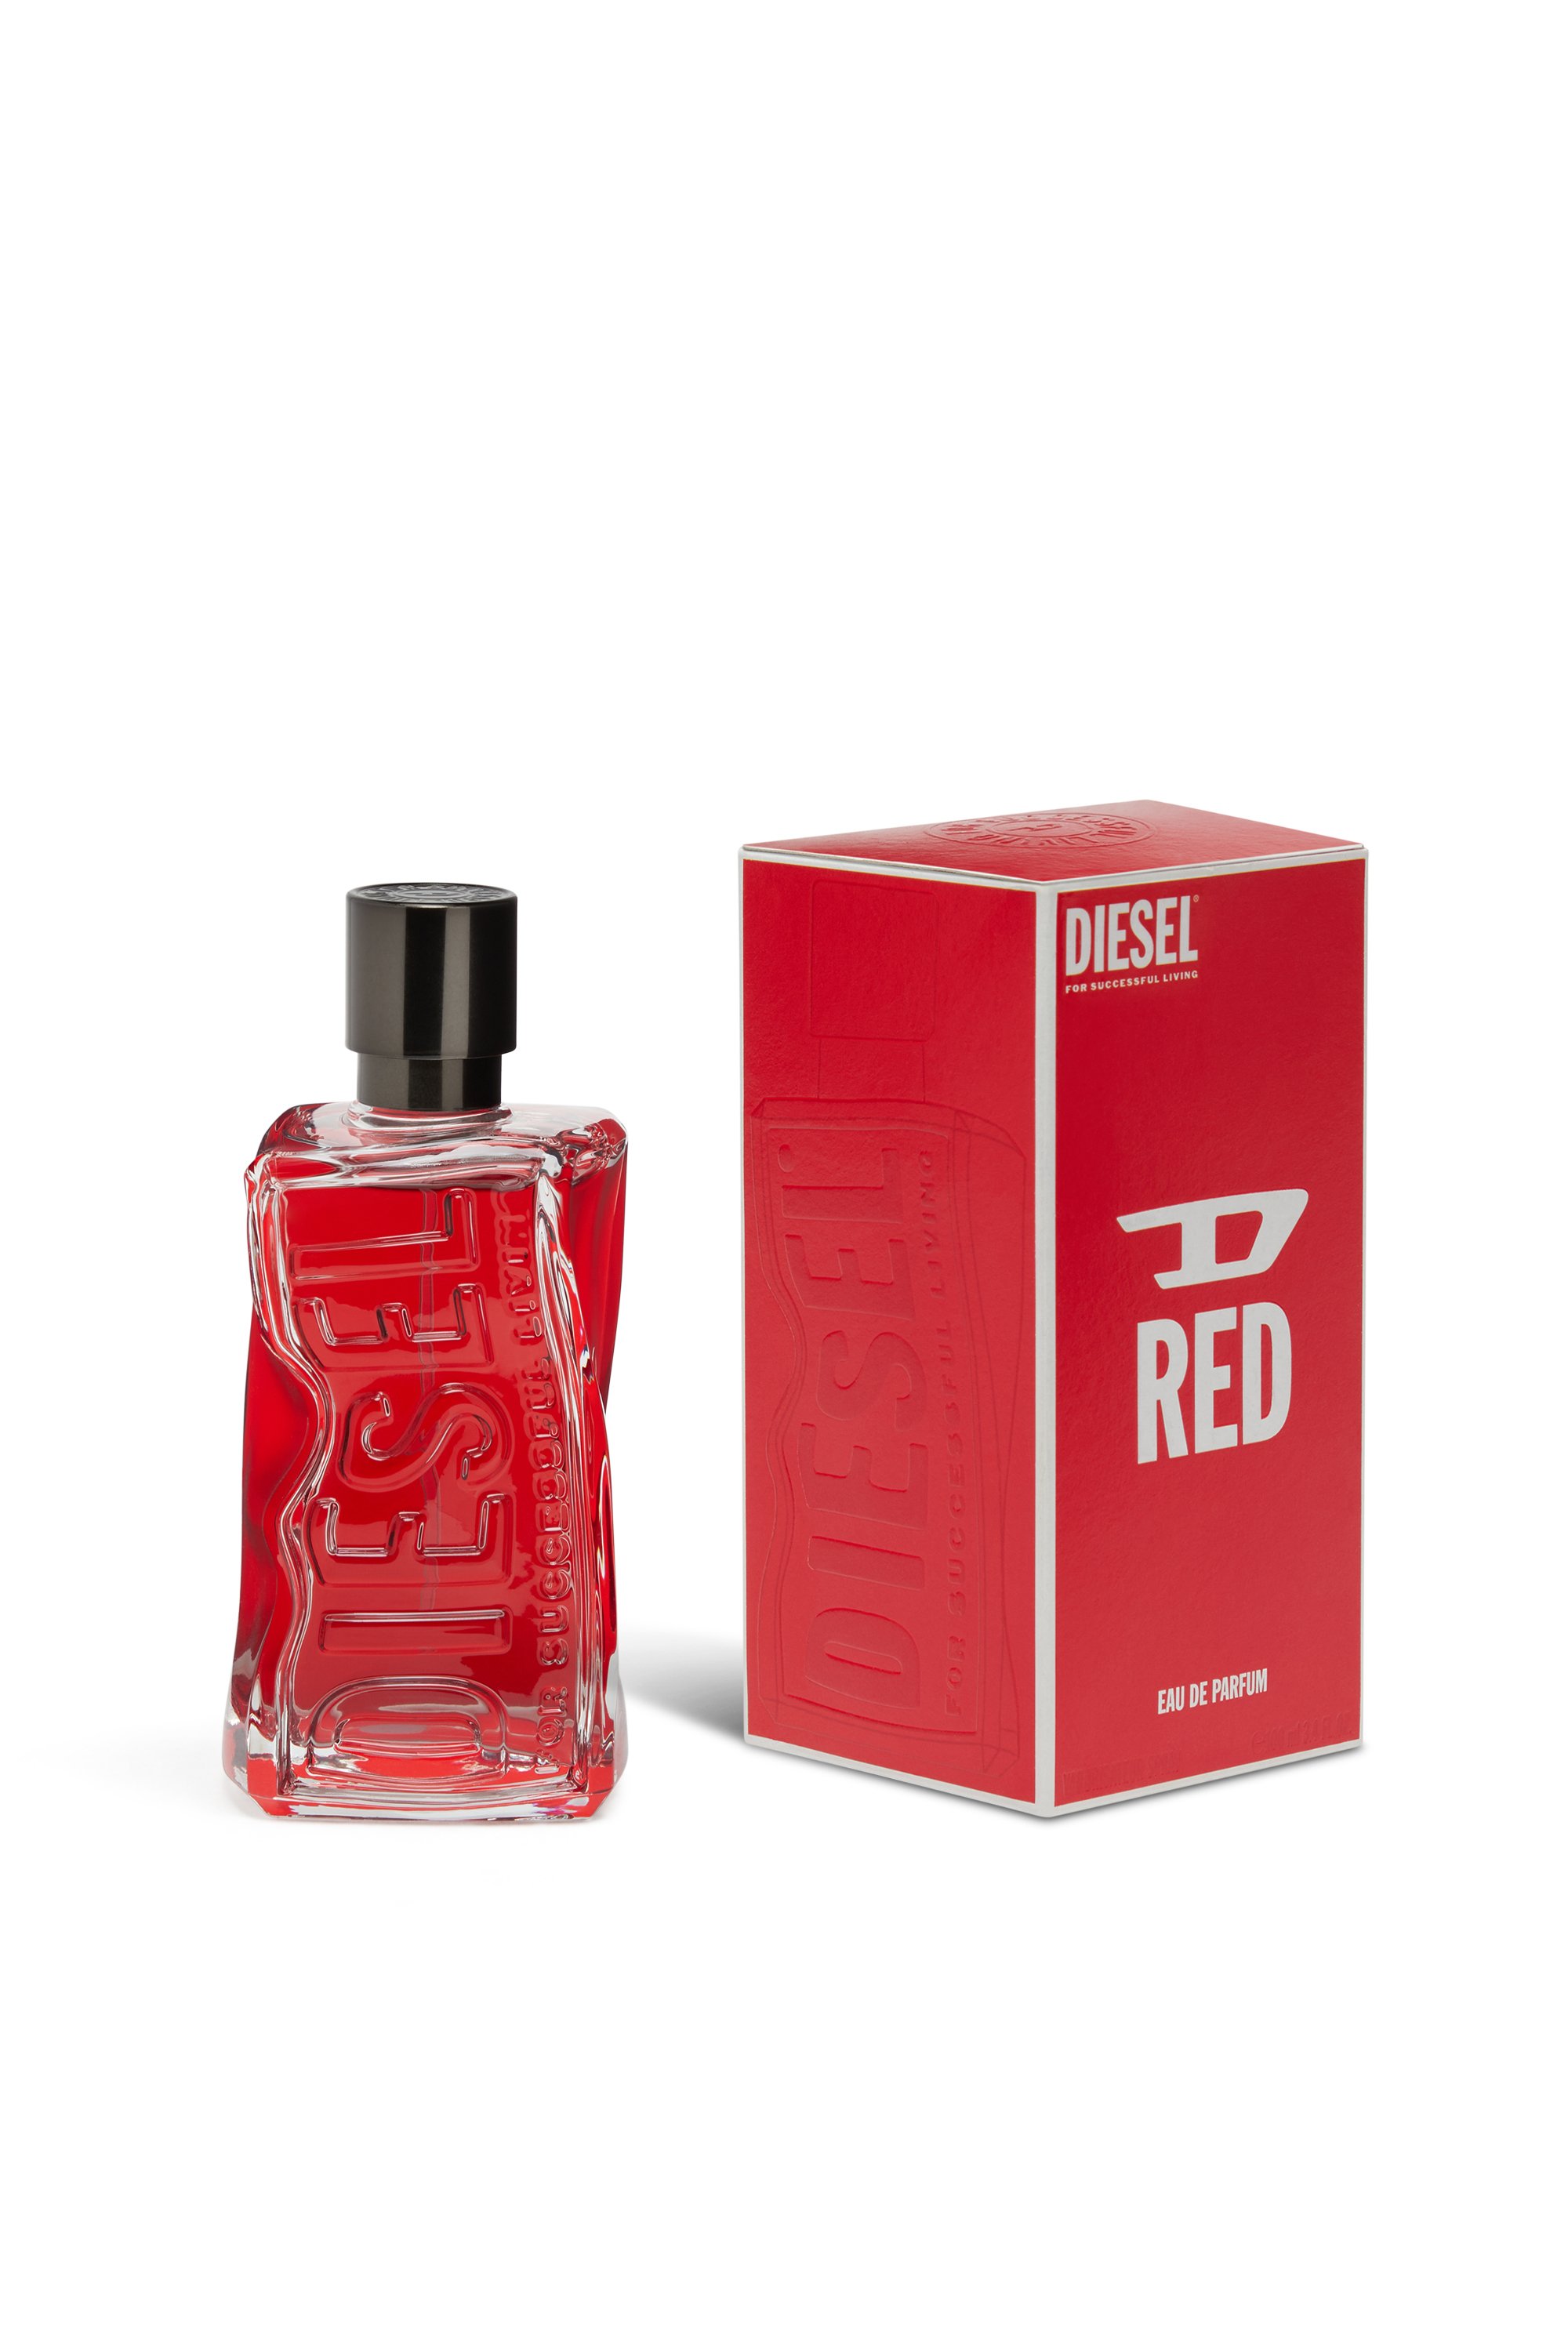 Diesel - D RED 50 ML, Red - Image 2